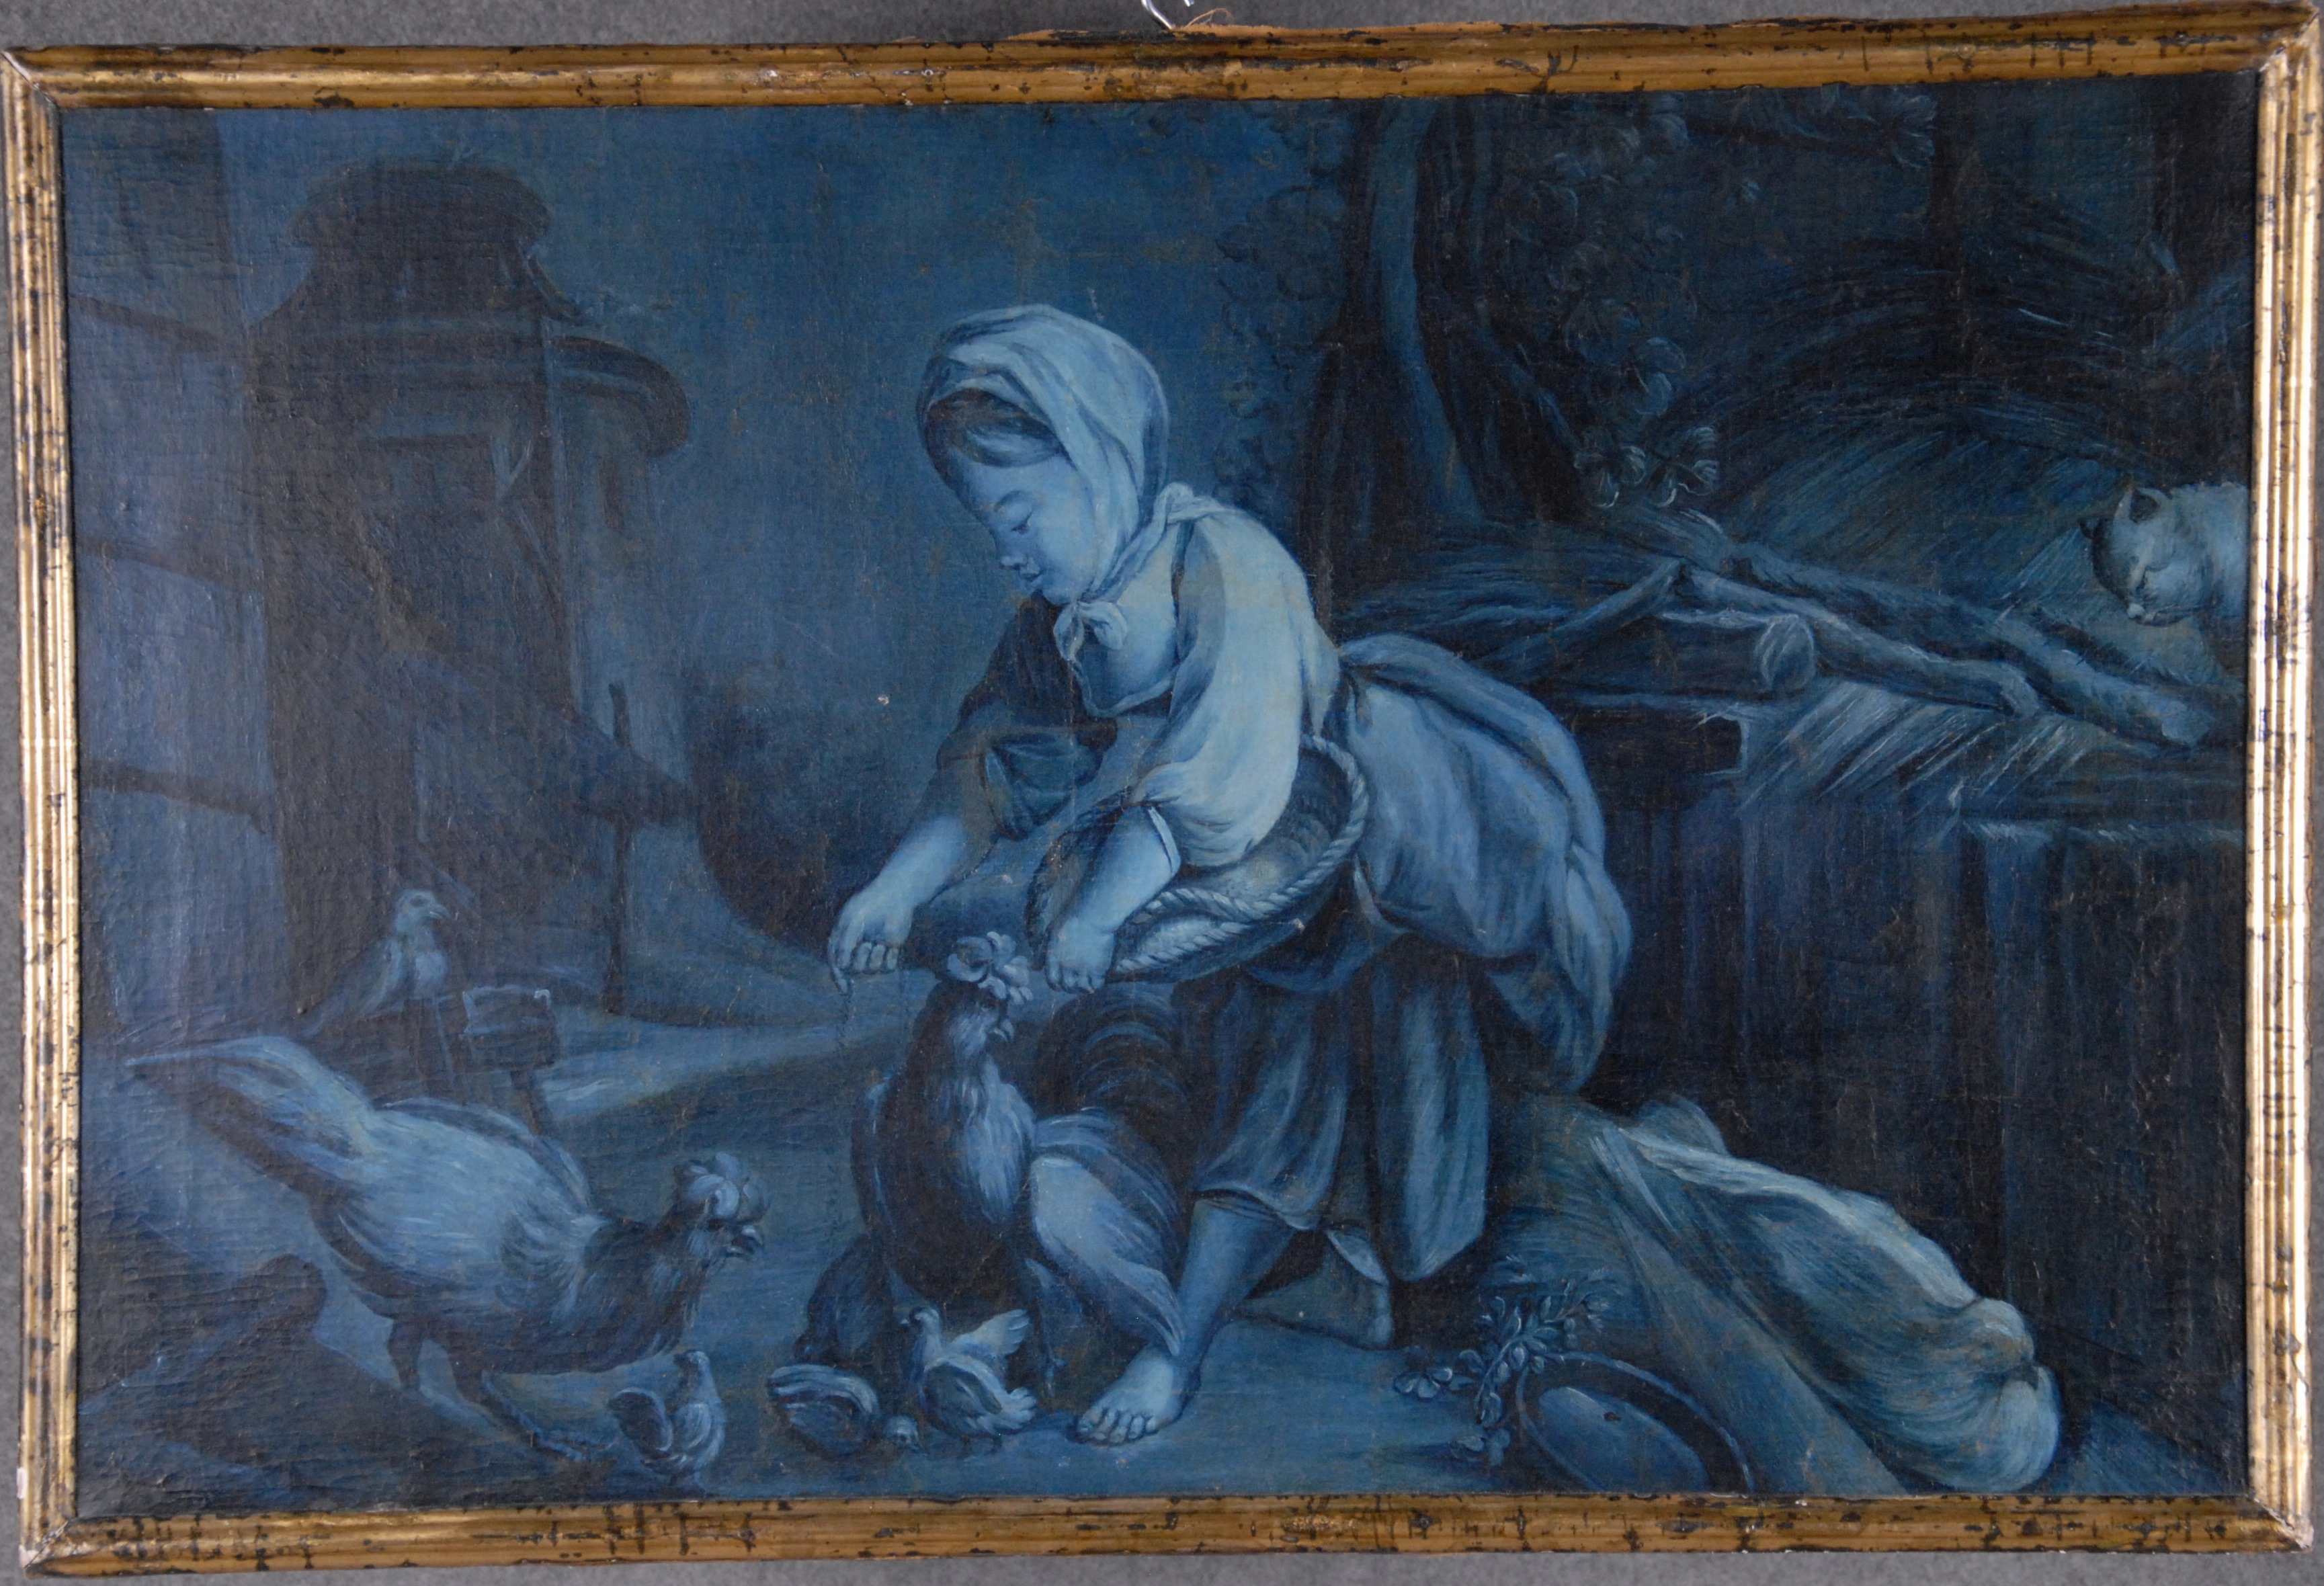 Dipinto olio su tela raff. ''BIMBA NEL POLLAIO''. XIX secolo. In cornice. Restauri. Mis. Lung. cm.